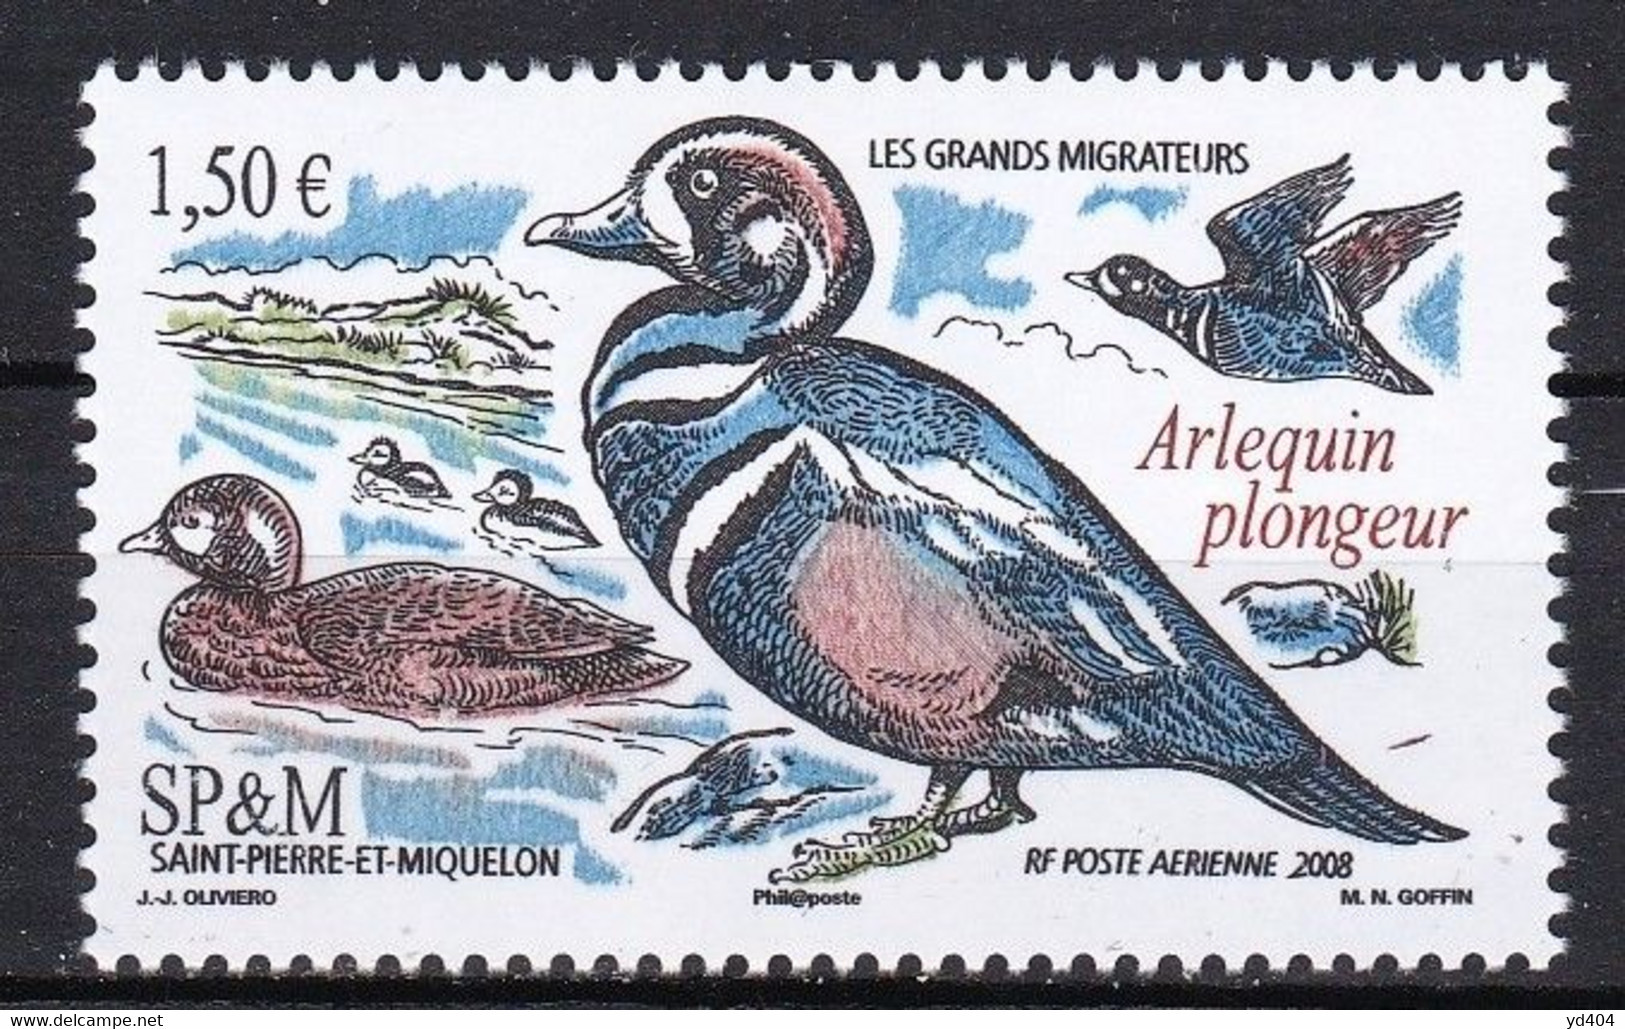 PM-430 – ST PIERRE & MIQUELON – AIRMAIL - 2008 – MIGRATORY BIRDS – SG # 1082 MNH 7 € - Nuevos